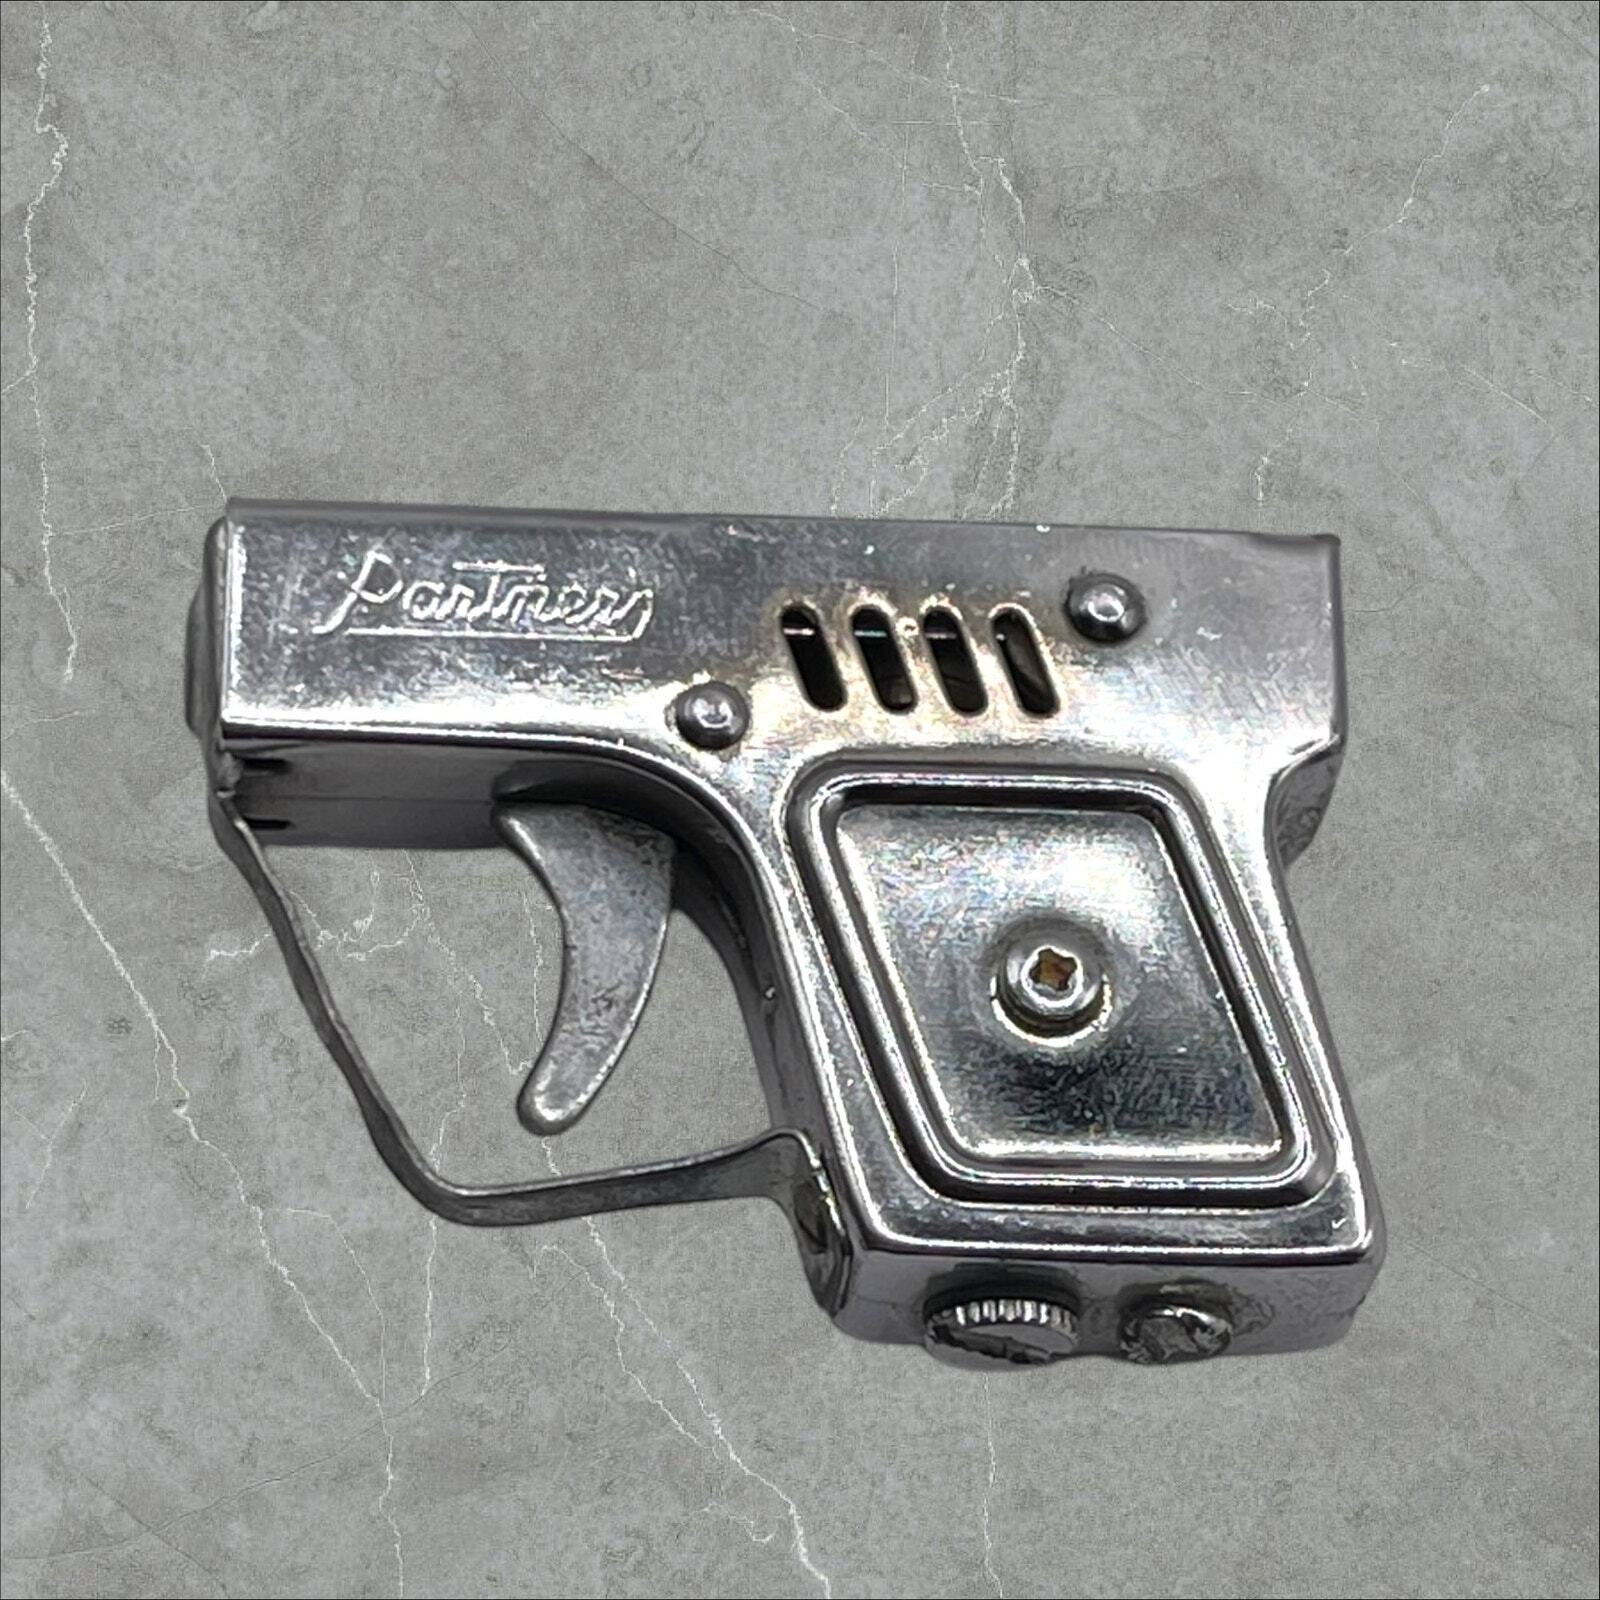 1950s Vintage Partner Gun Pistol Chrome Cigarette Lighter Made in Japan